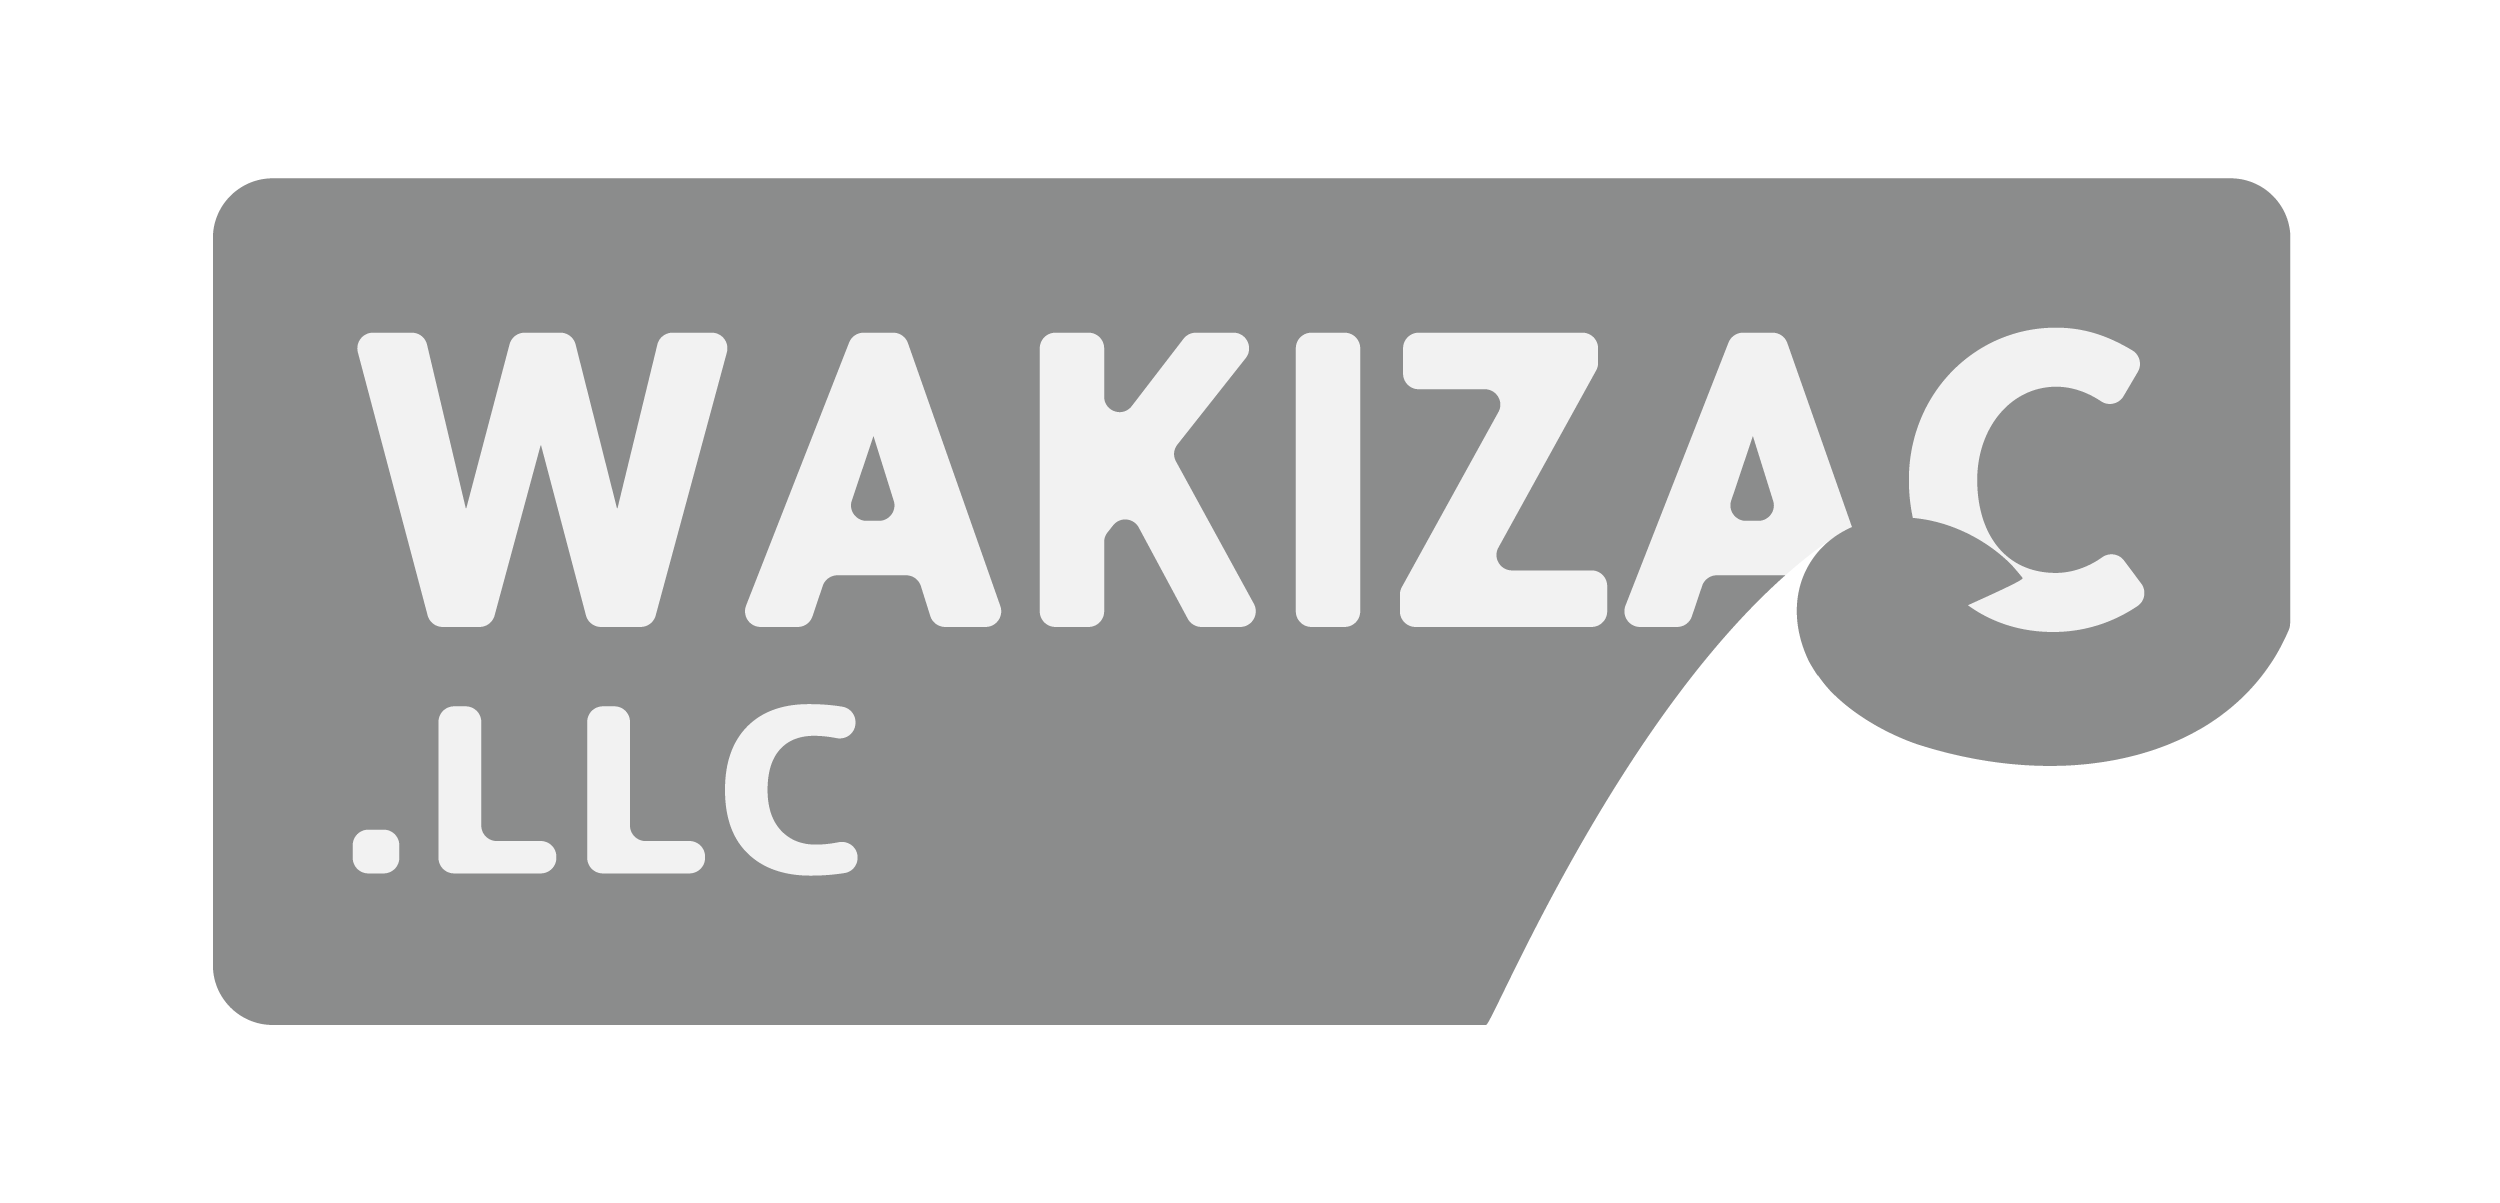 WAKIZAC.LLC